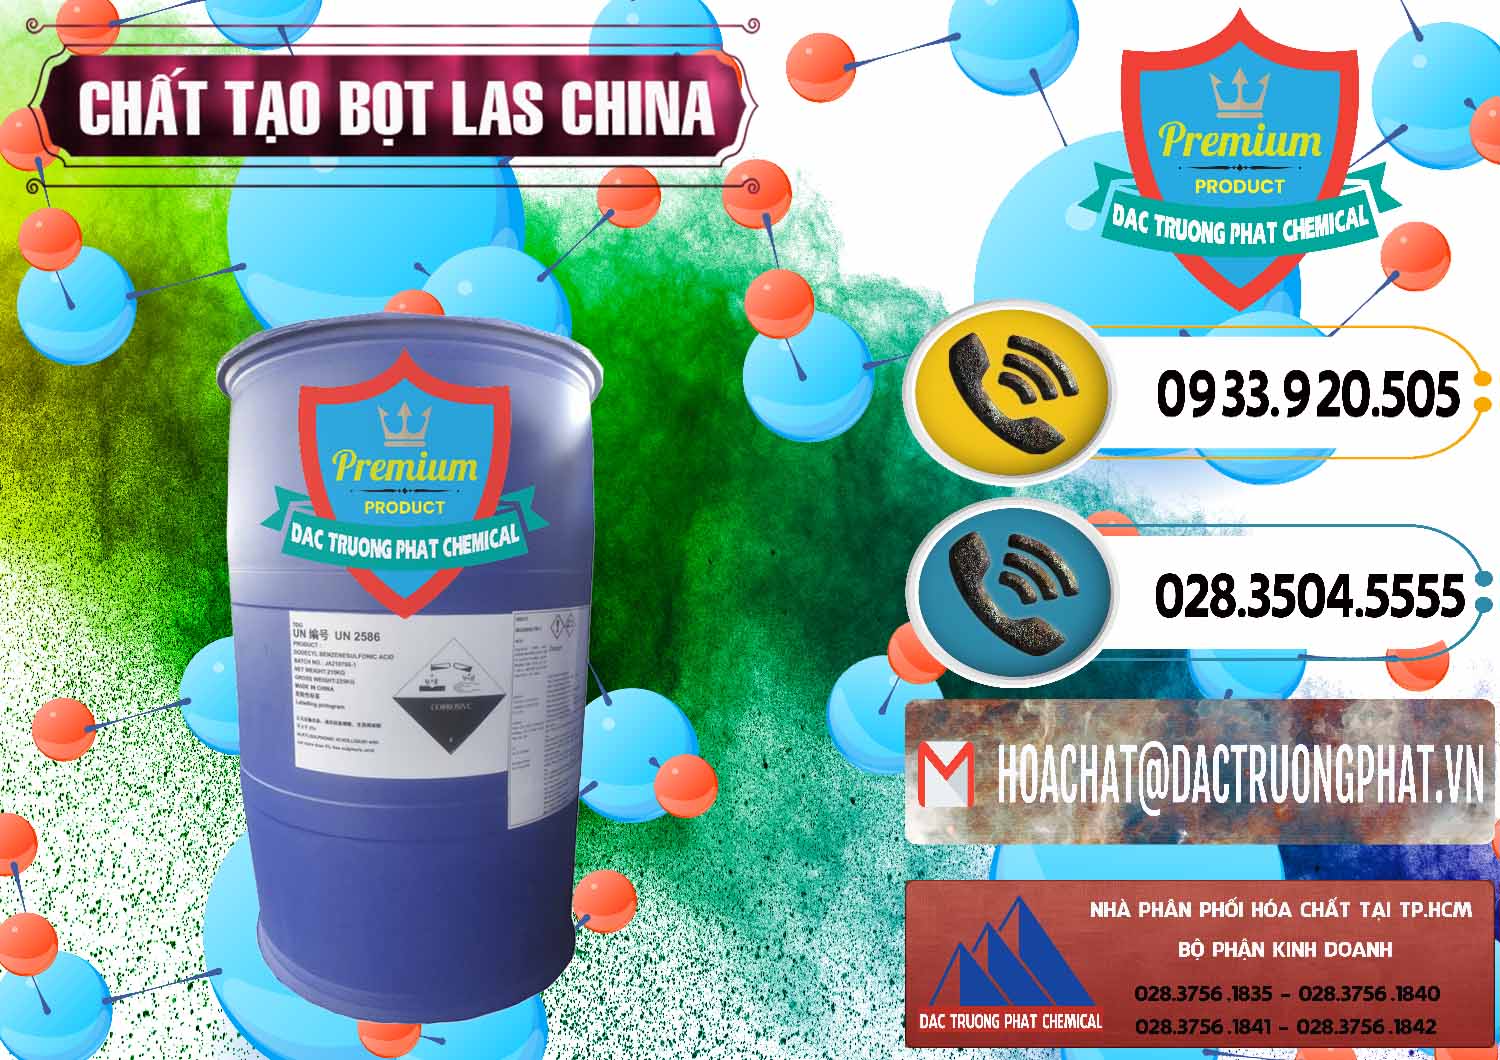 Nhập khẩu và bán Chất tạo bọt Las Trung Quốc China - 0451 - Công ty chuyên bán _ cung cấp hóa chất tại TP.HCM - hoachatdetnhuom.vn